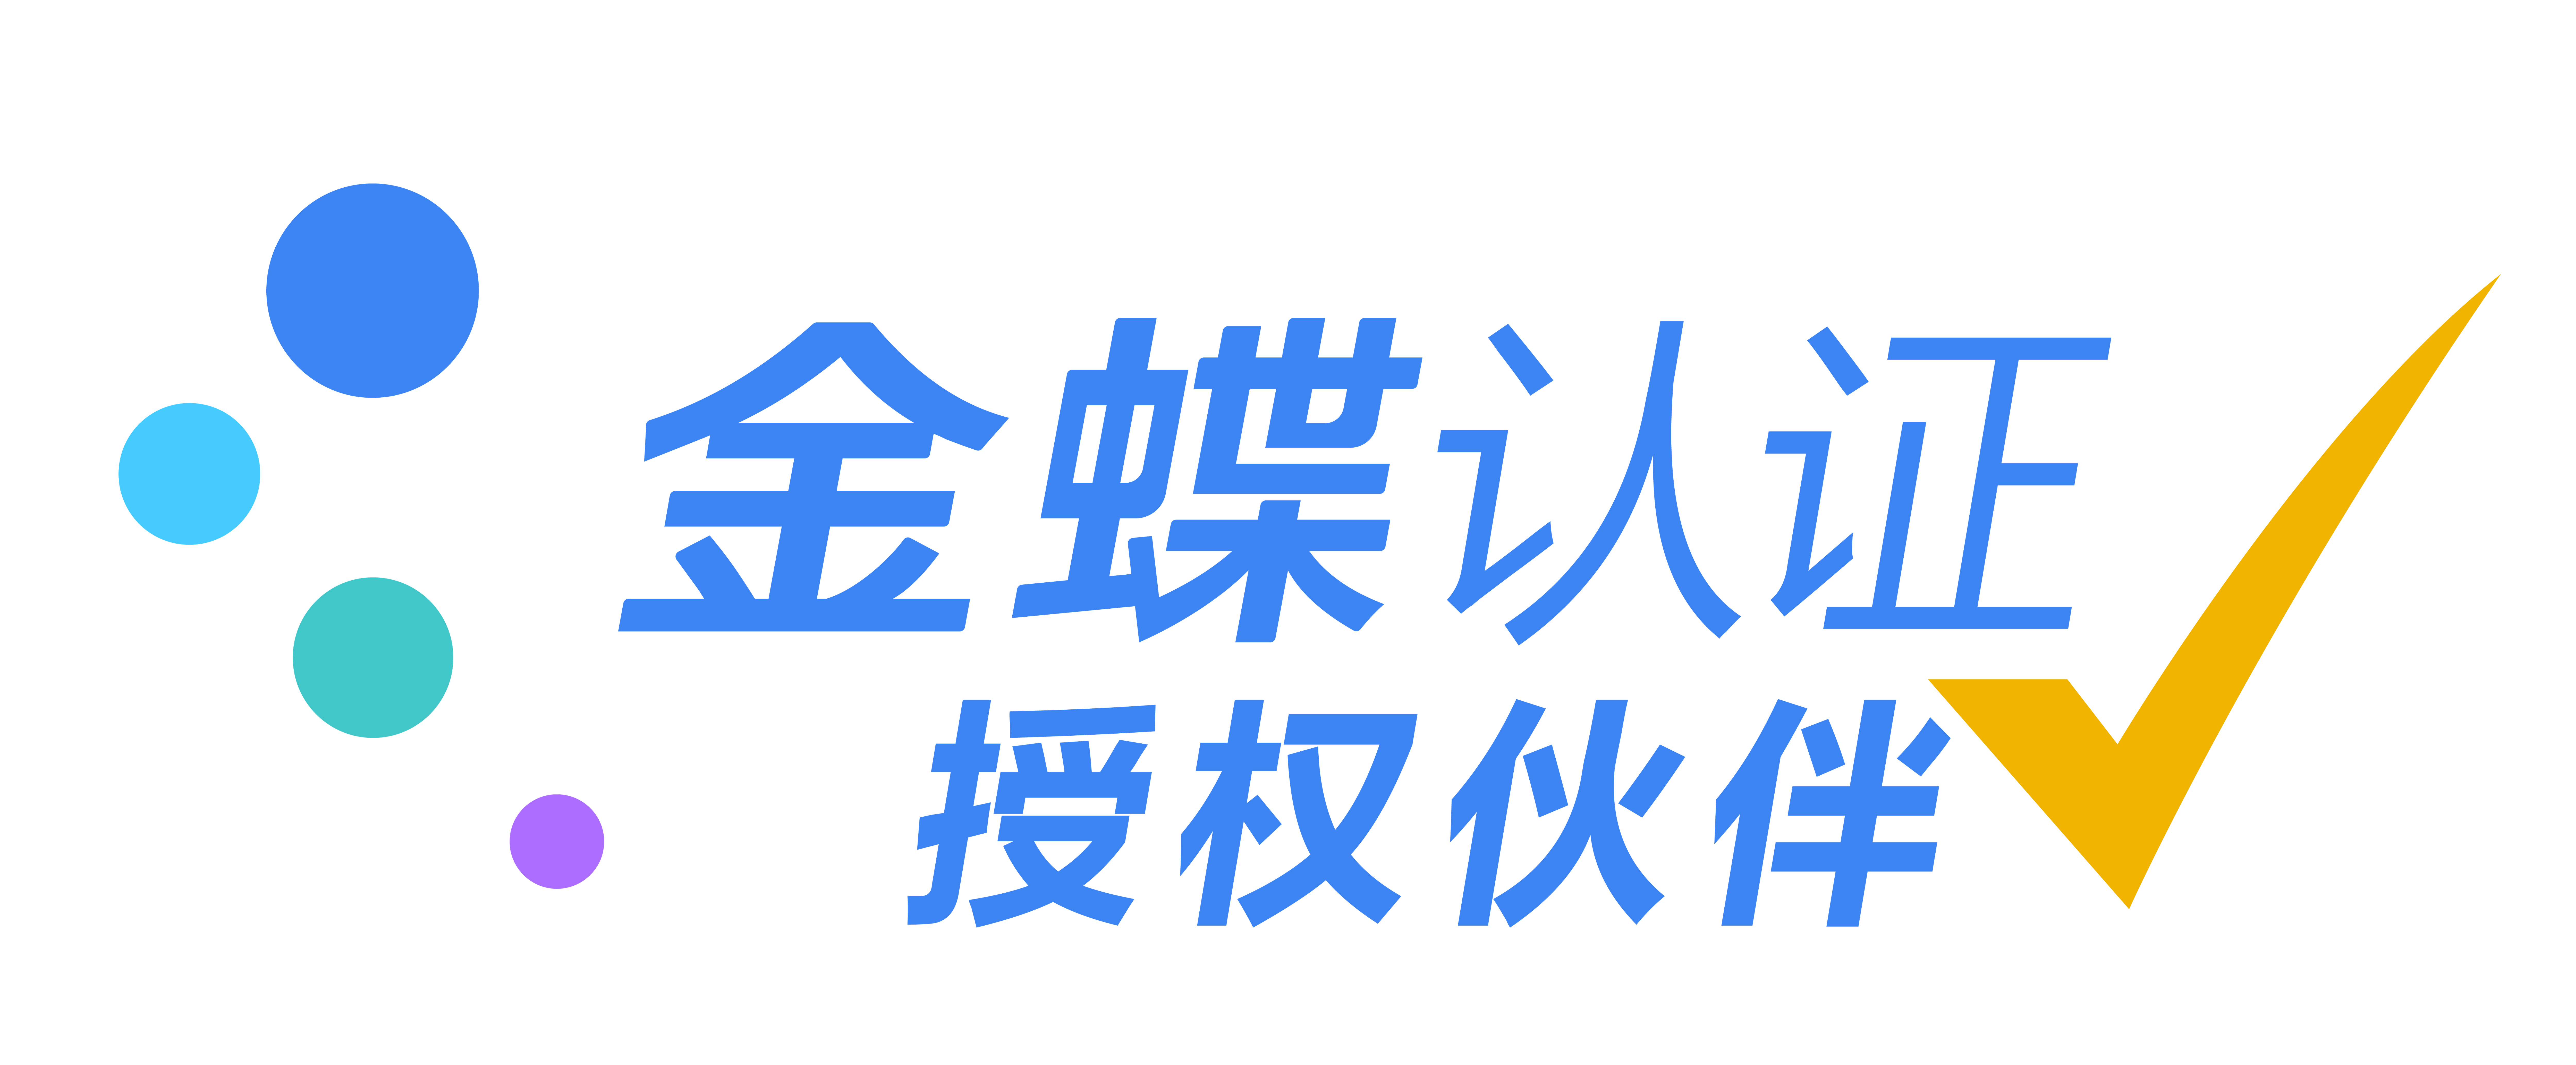 金蝶授权营销服务伙伴-广州星晨软件科技有限公司-广州星晨官网